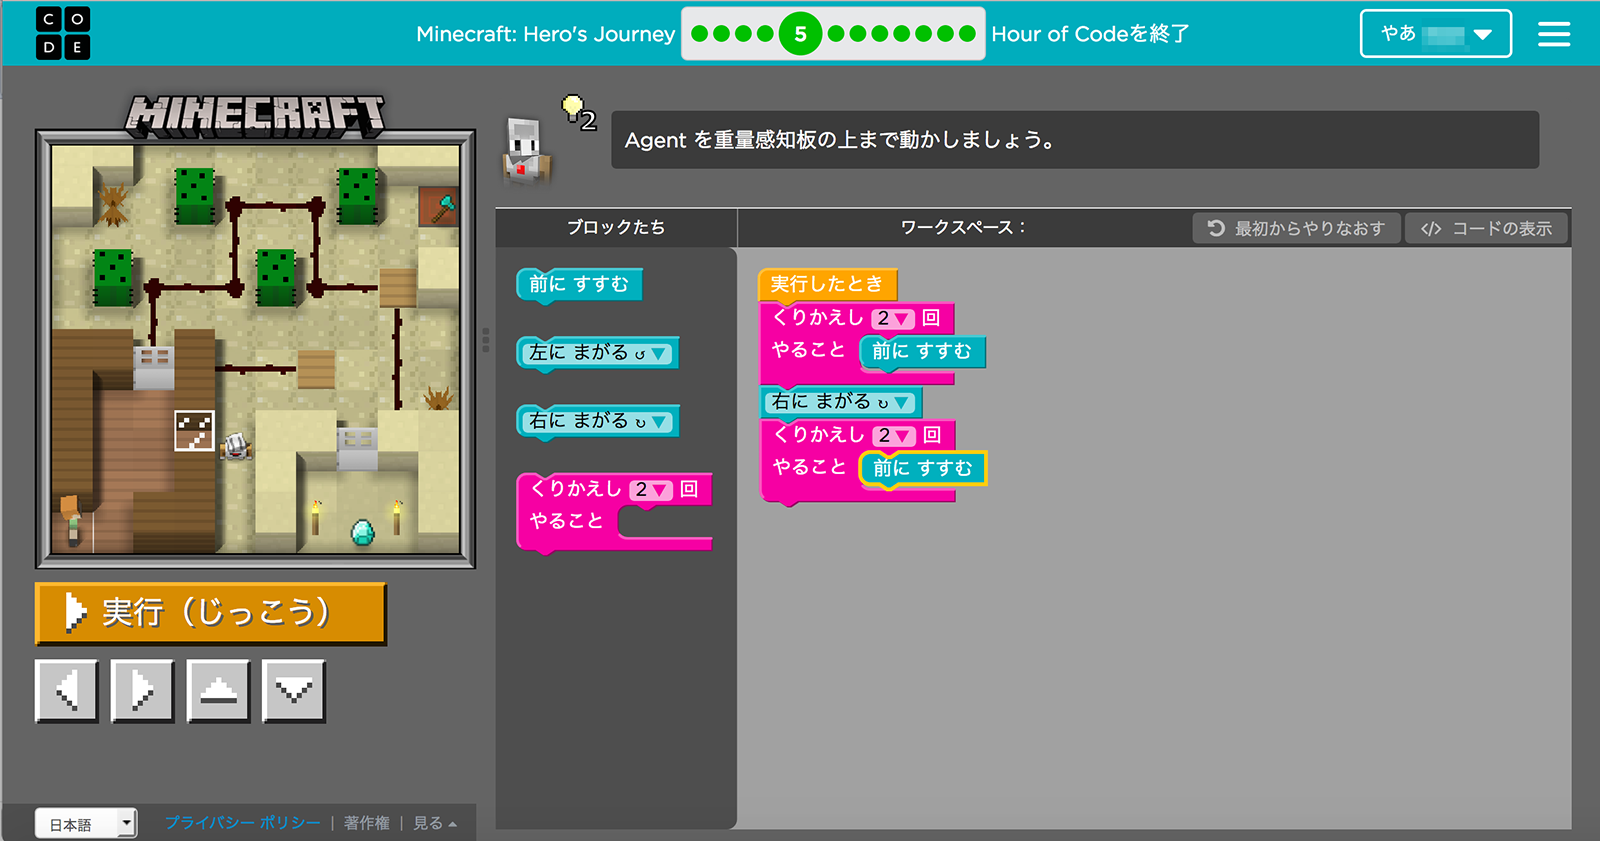 基本は日本語のブロックパーツで文章を組み立てればできる